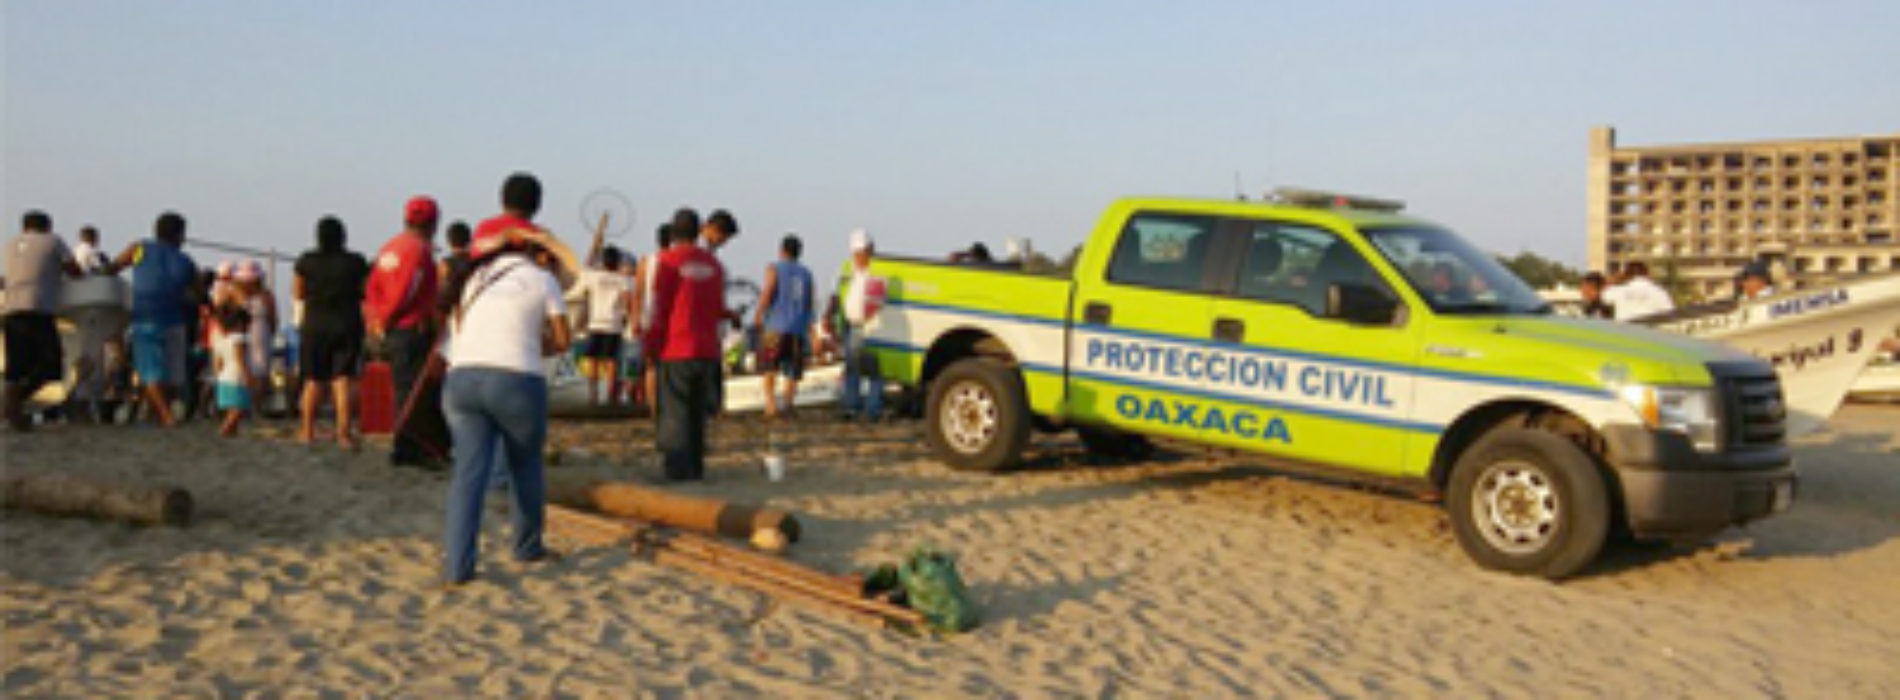 Refuerza Protección Civil de Oaxaca acciones preventivas en destinos turísticos